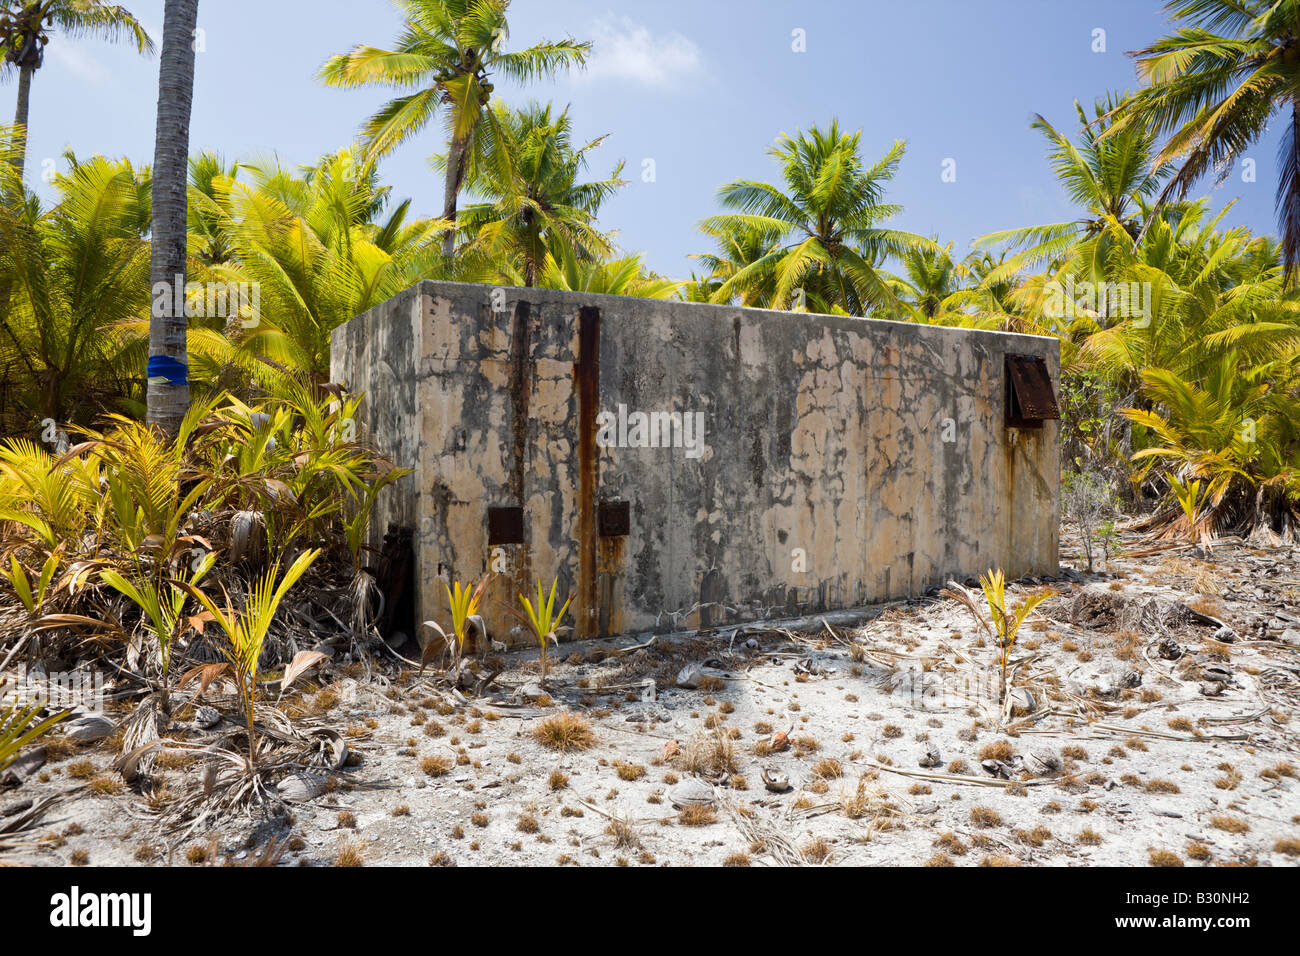 Pour l'Observation de vieux bunker les essais d'armes Îles Marshall Micronésie Océan Pacifique, l'atoll de Bikini Banque D'Images